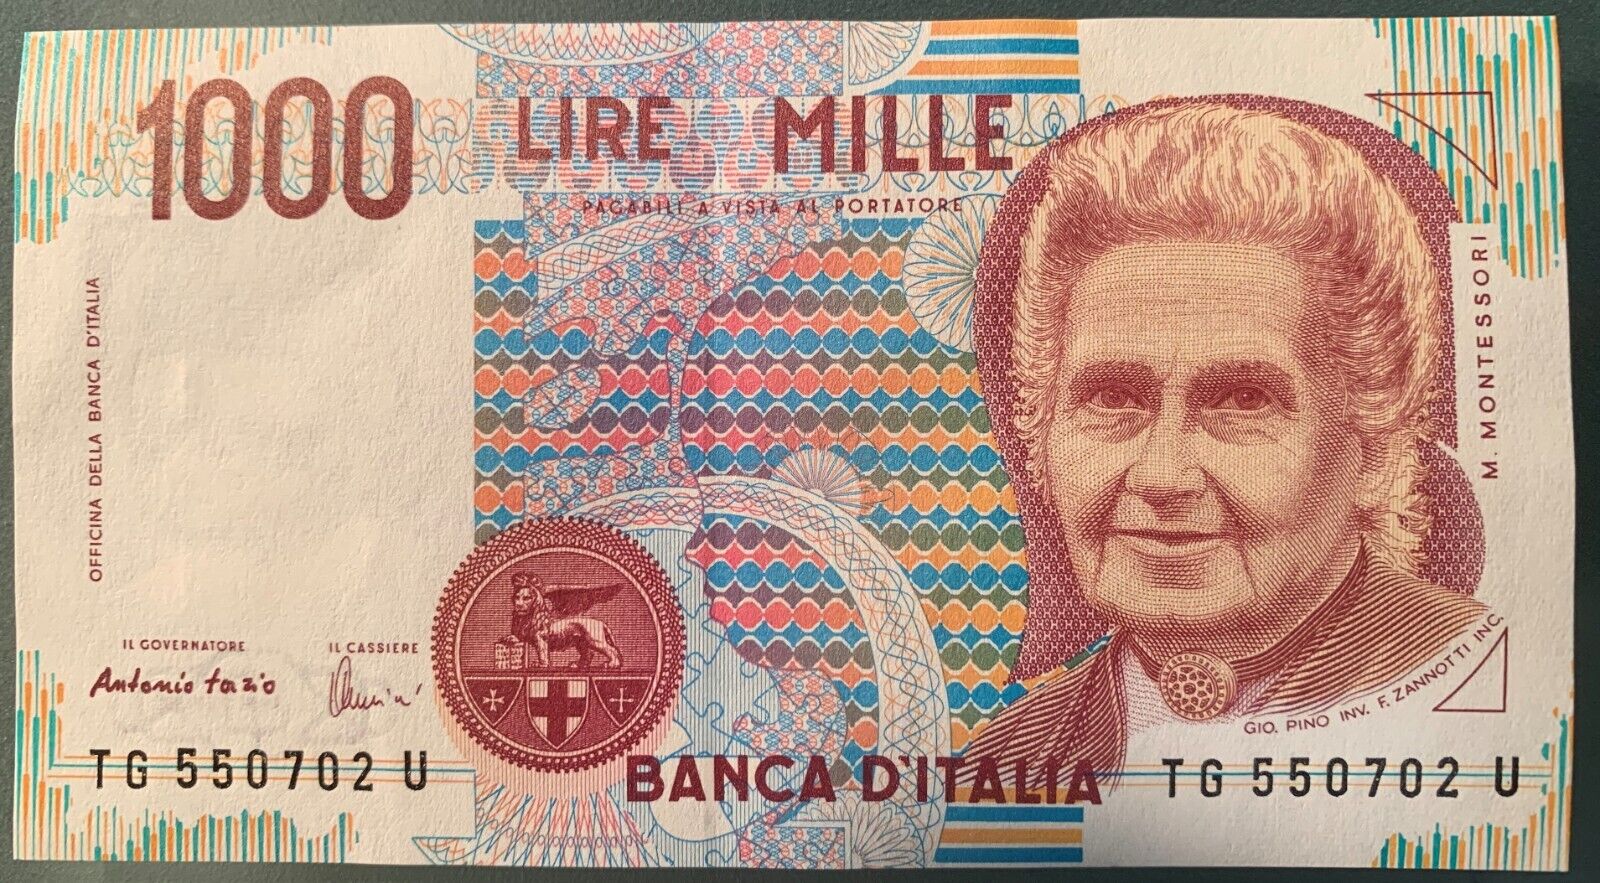 ITALY 1000 (1,000) Lire, 1990, P-114